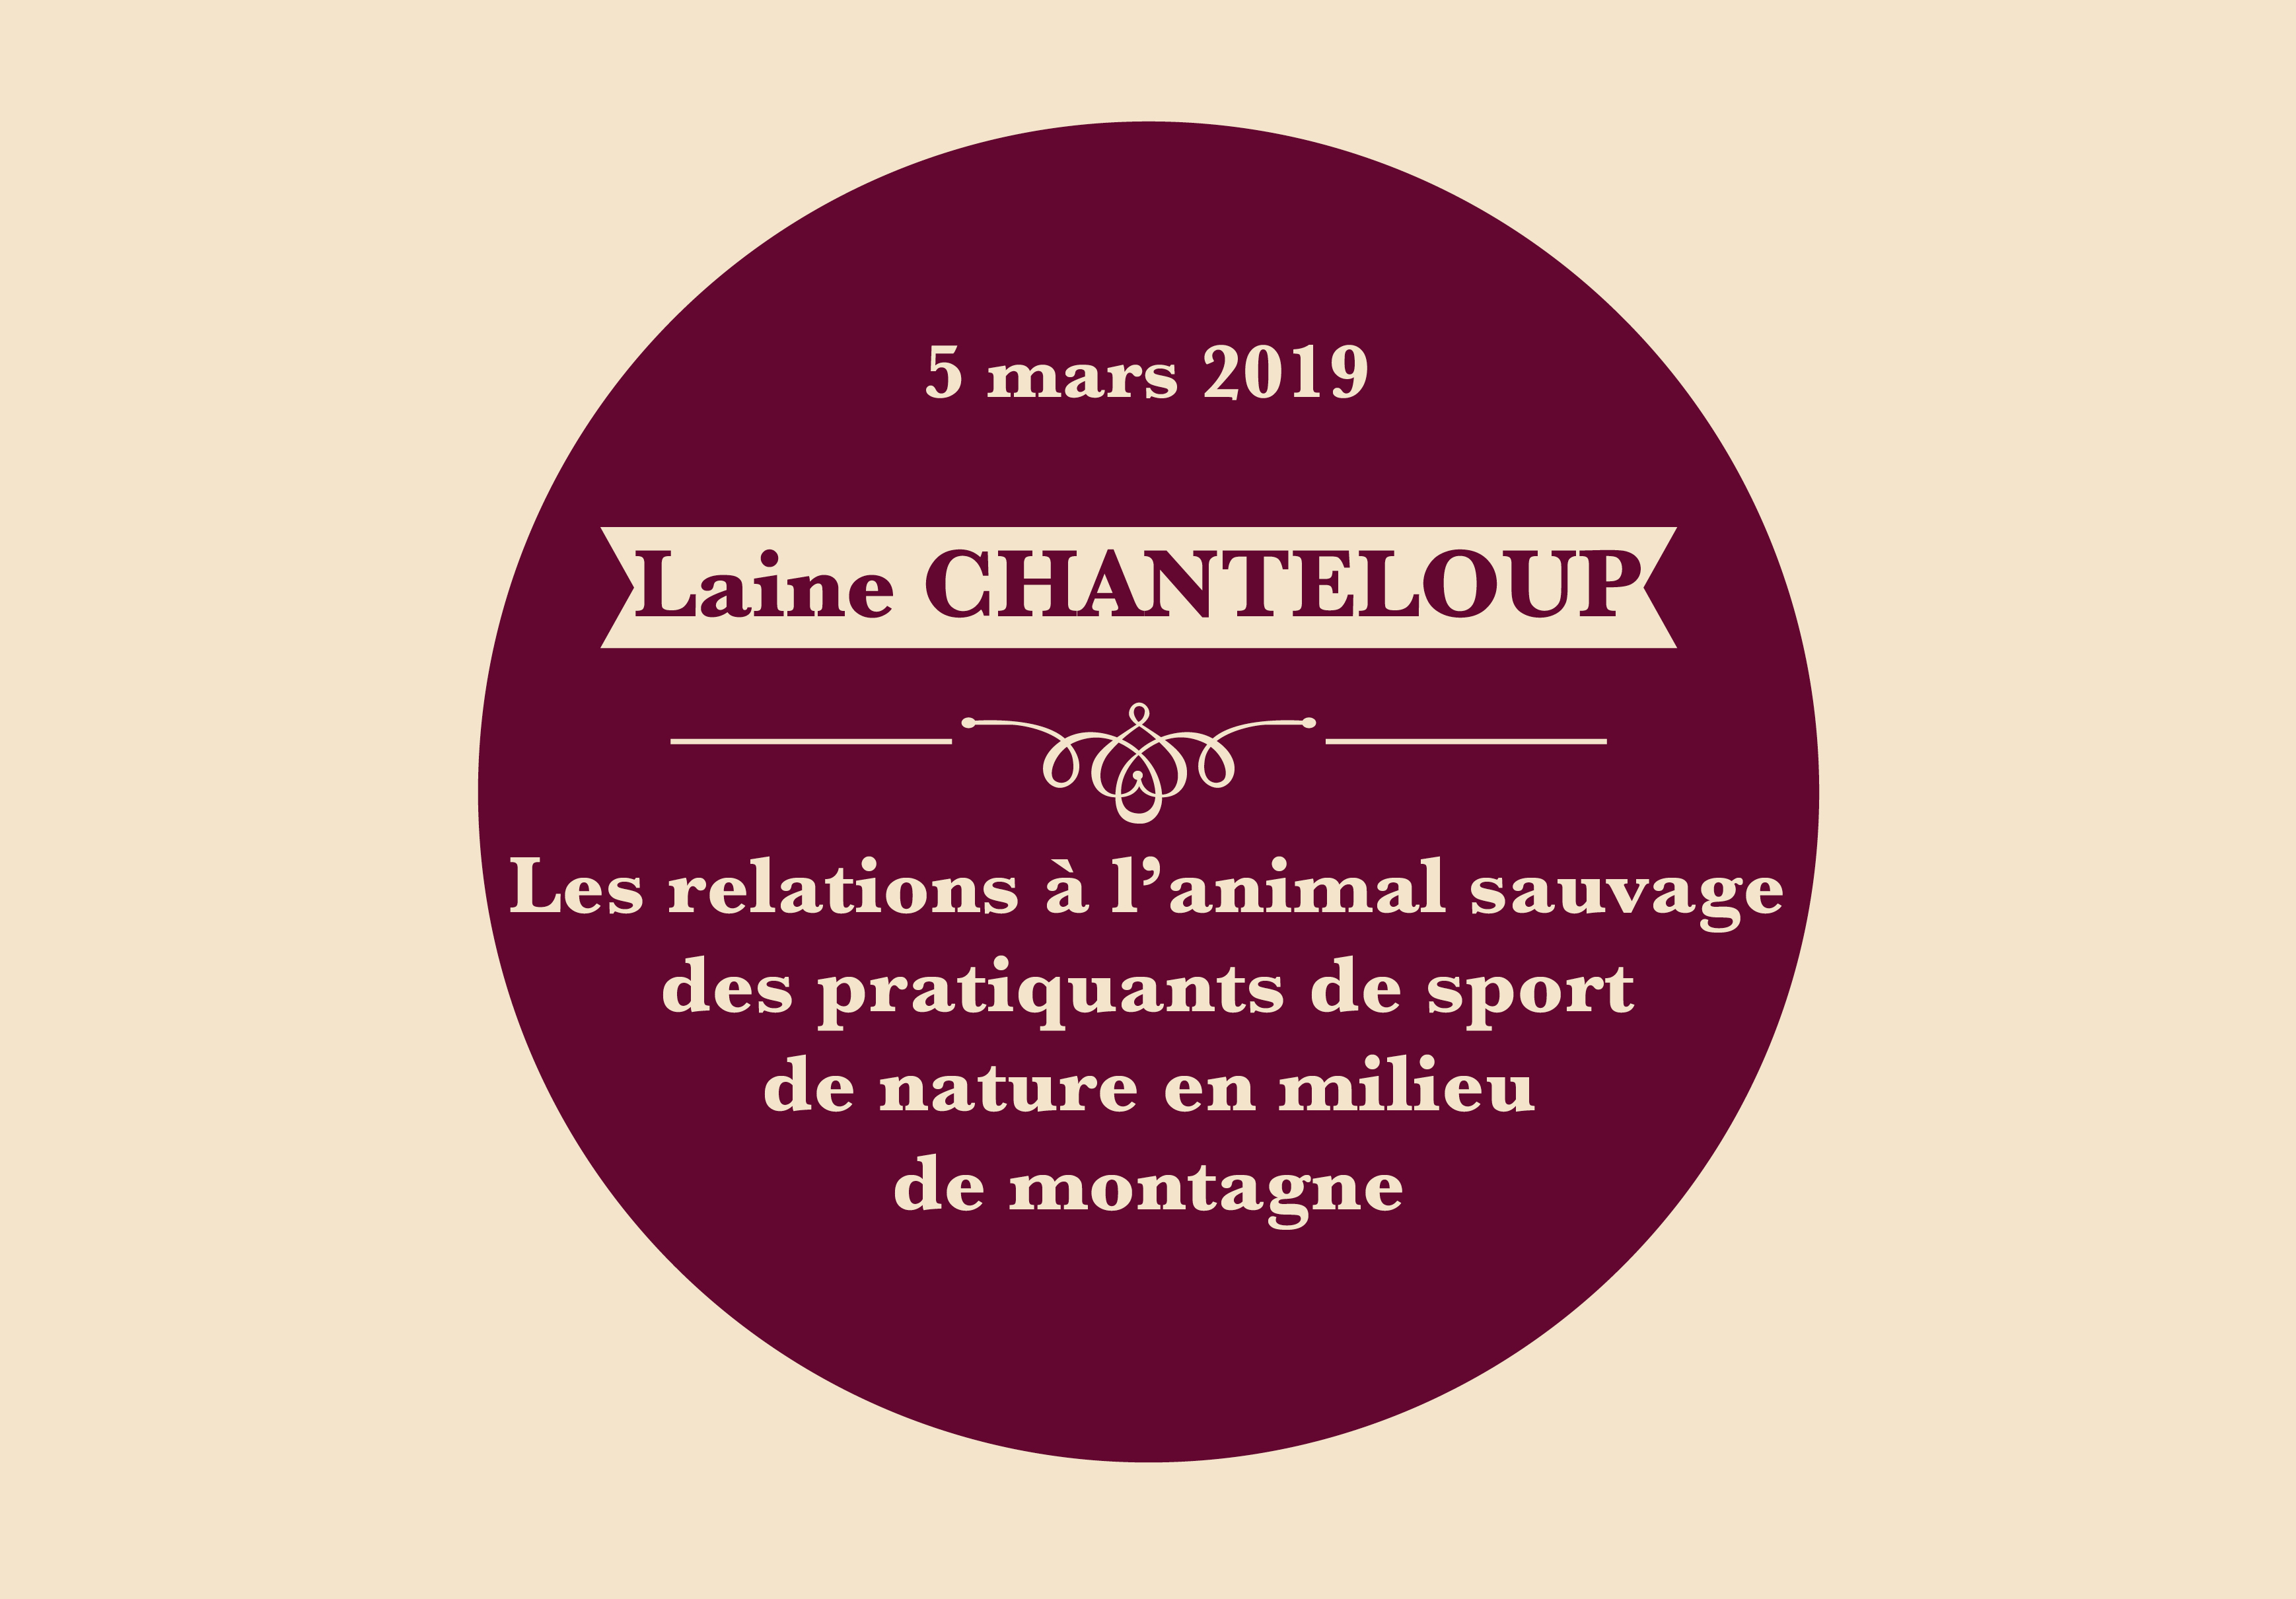 Laine Chanteloup - Les relations à l’animal sauvage des pratiquants de sport de nature en milieu de montagne